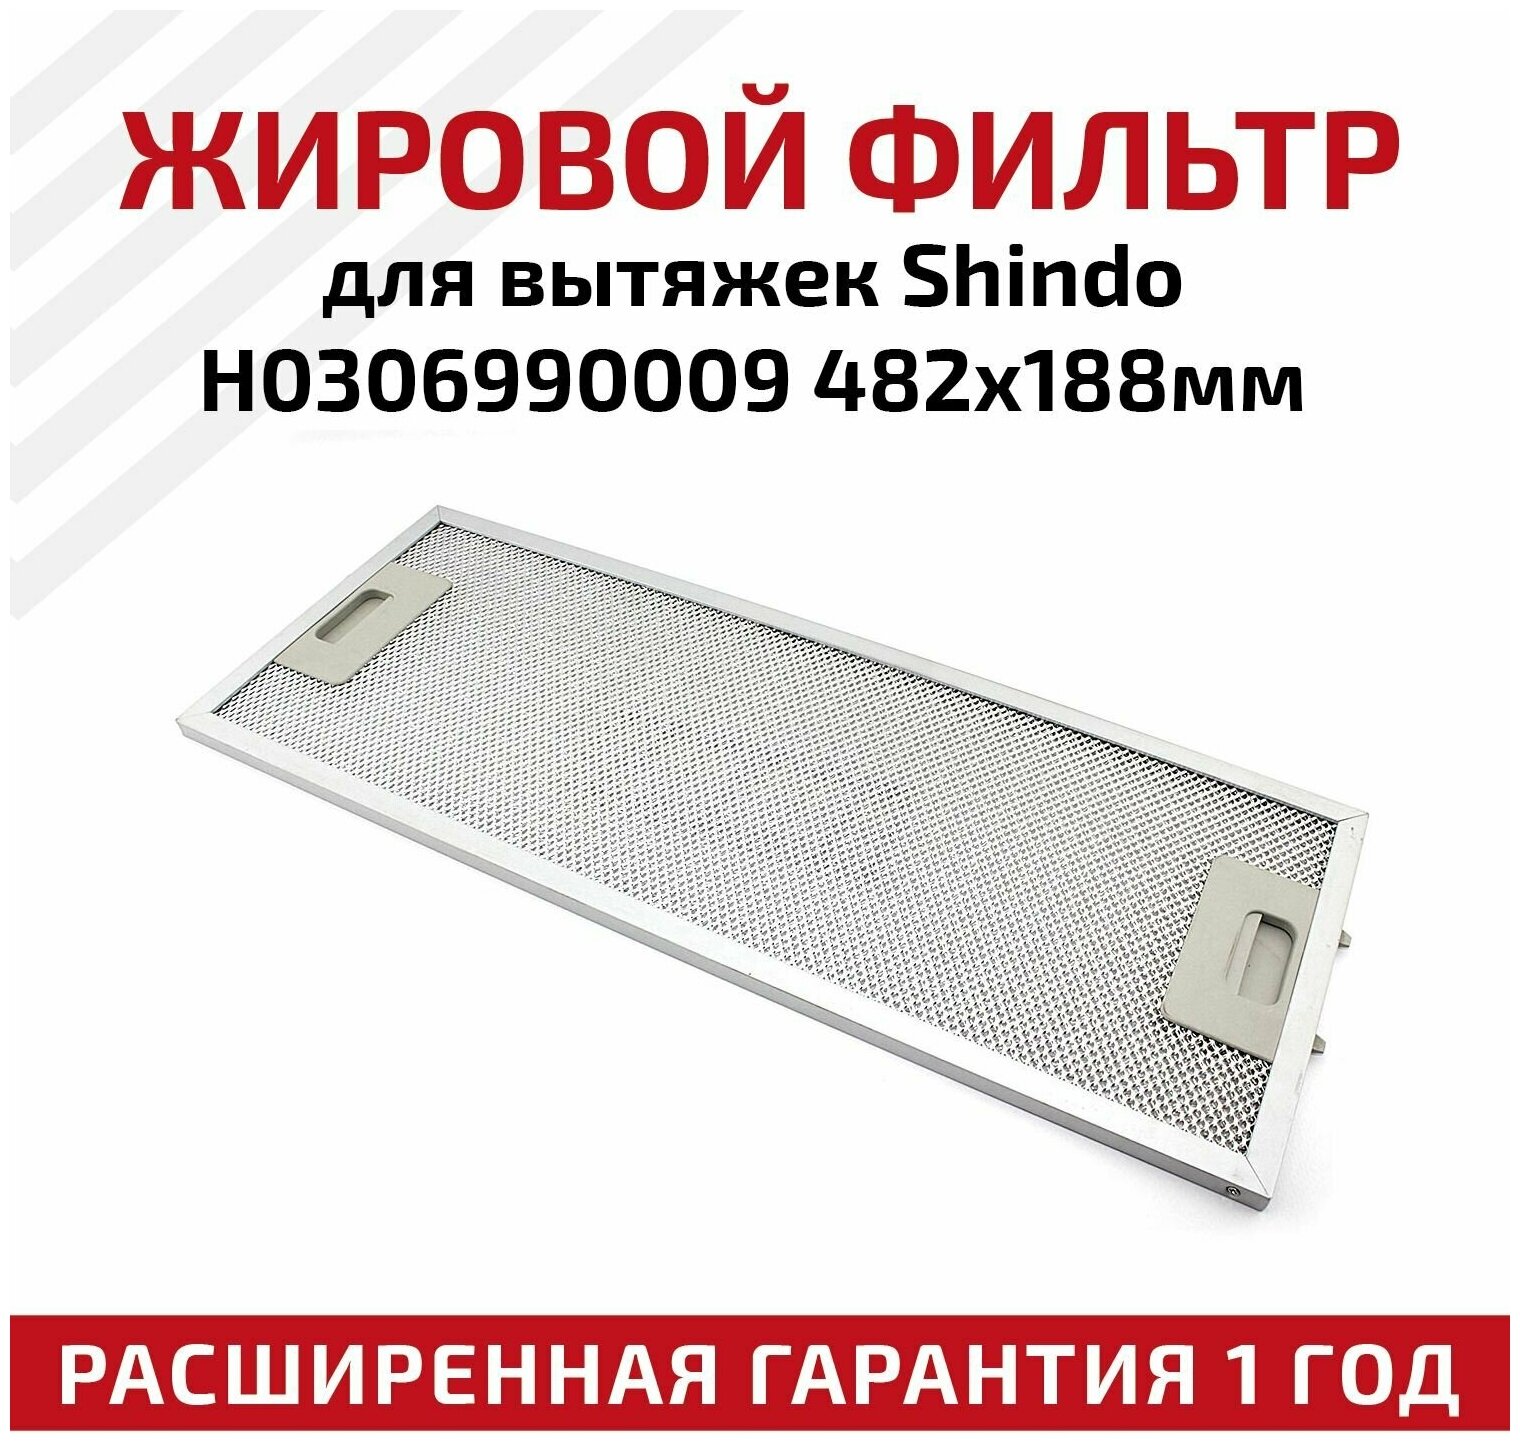 Жировой фильтр (кассета) алюминиевый (металлический) рамочный H0306990009 для вытяжек Shindo, многоразовый, 482х188мм - фотография № 1